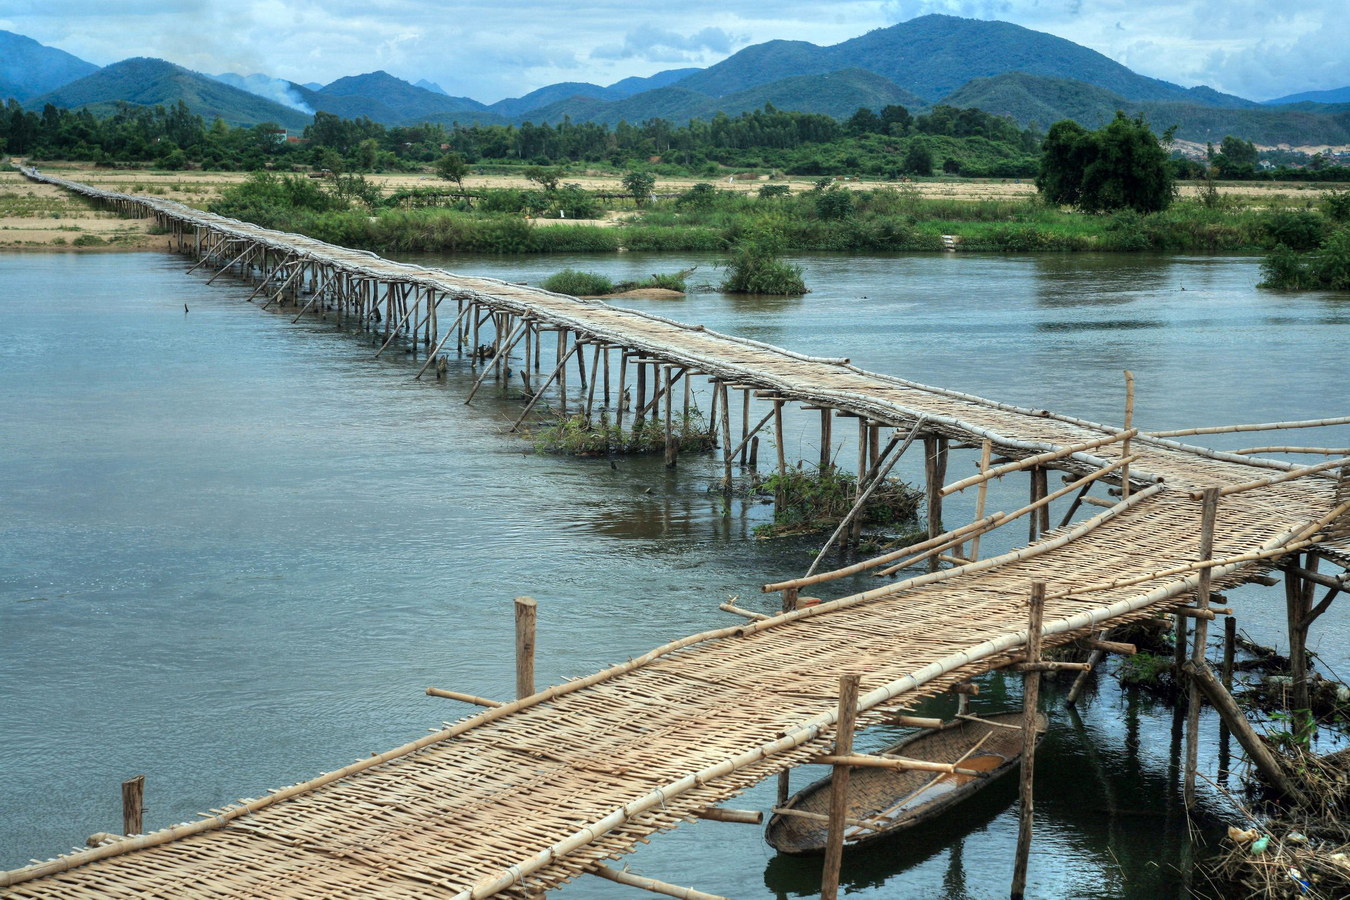 Chùm ảnh: Thót tim khi đi qua cây cầu tre nổi tiếng của Bình Định